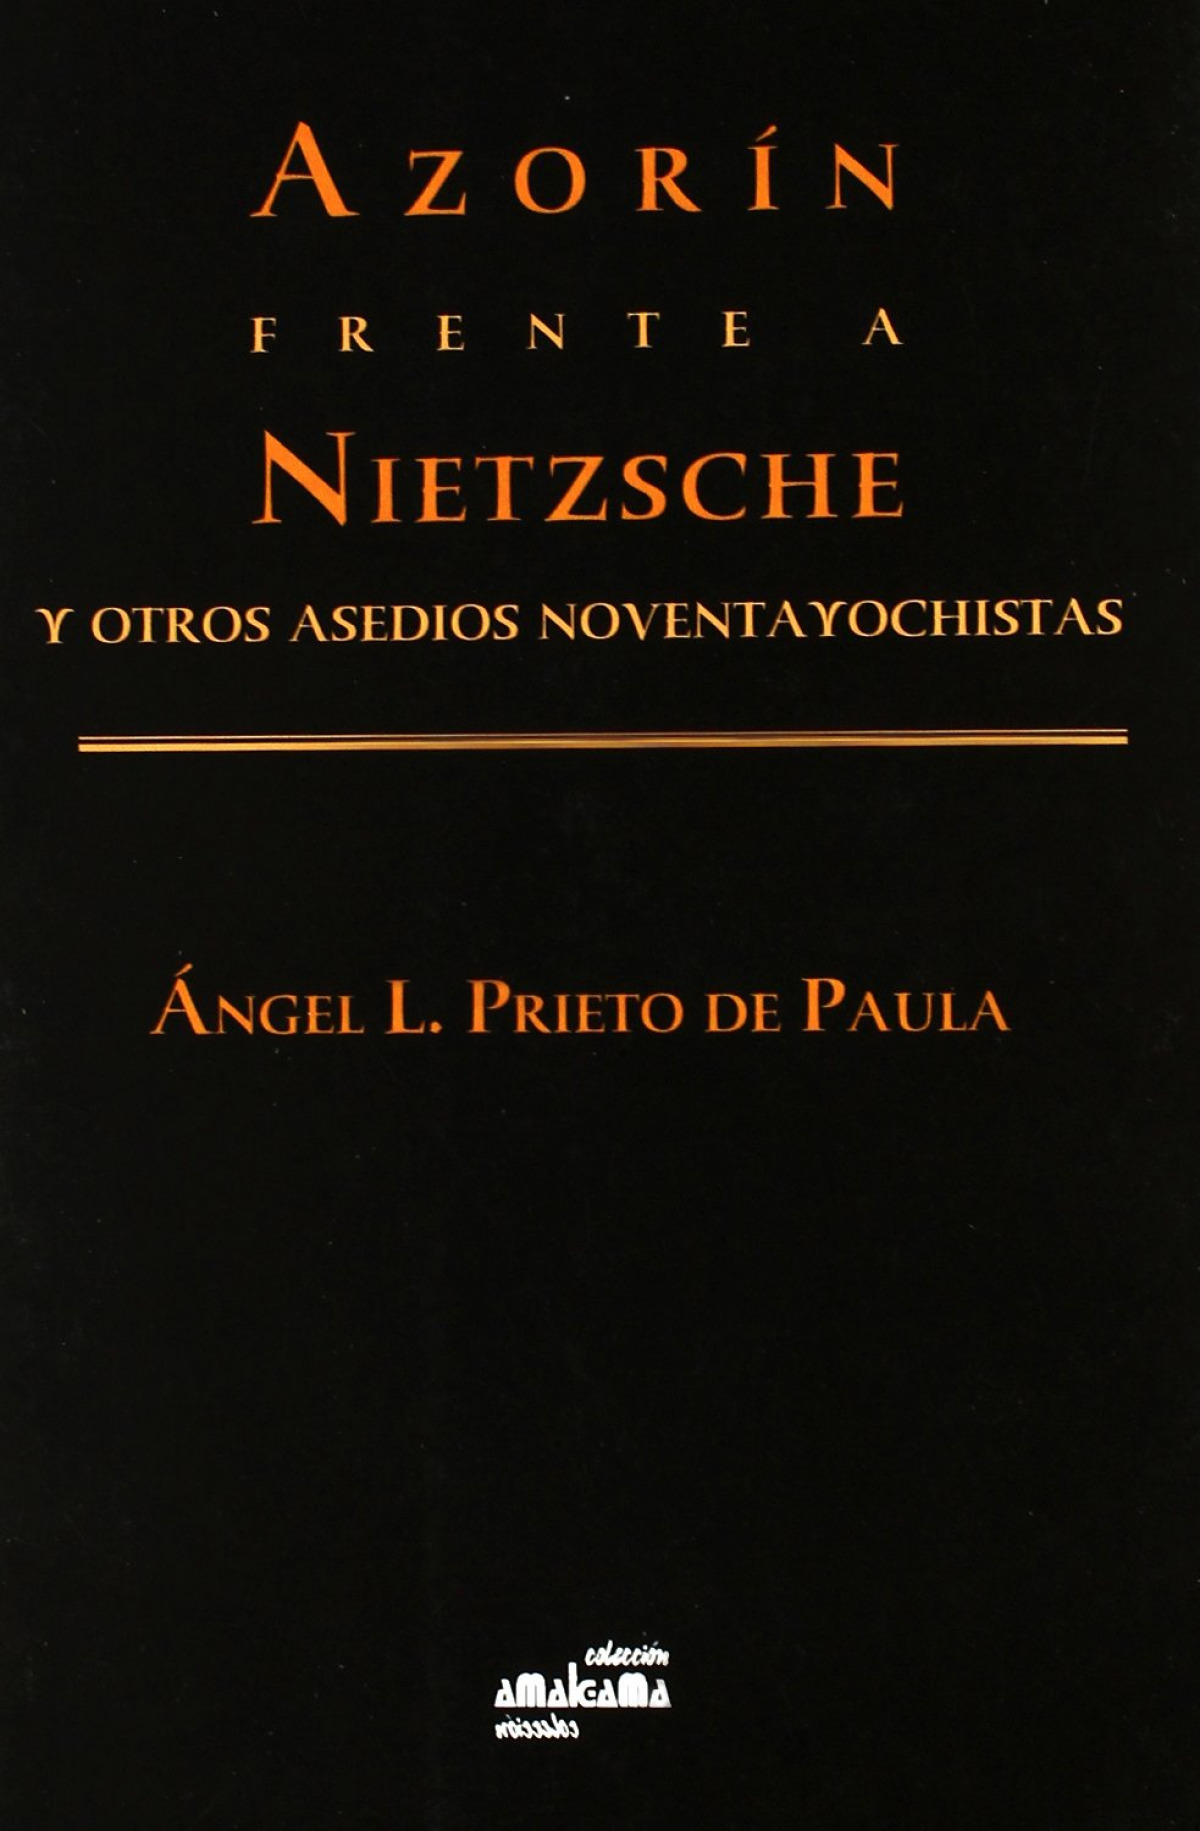 Azorín frente a Nietzsche y otros ensayos noventayochistas